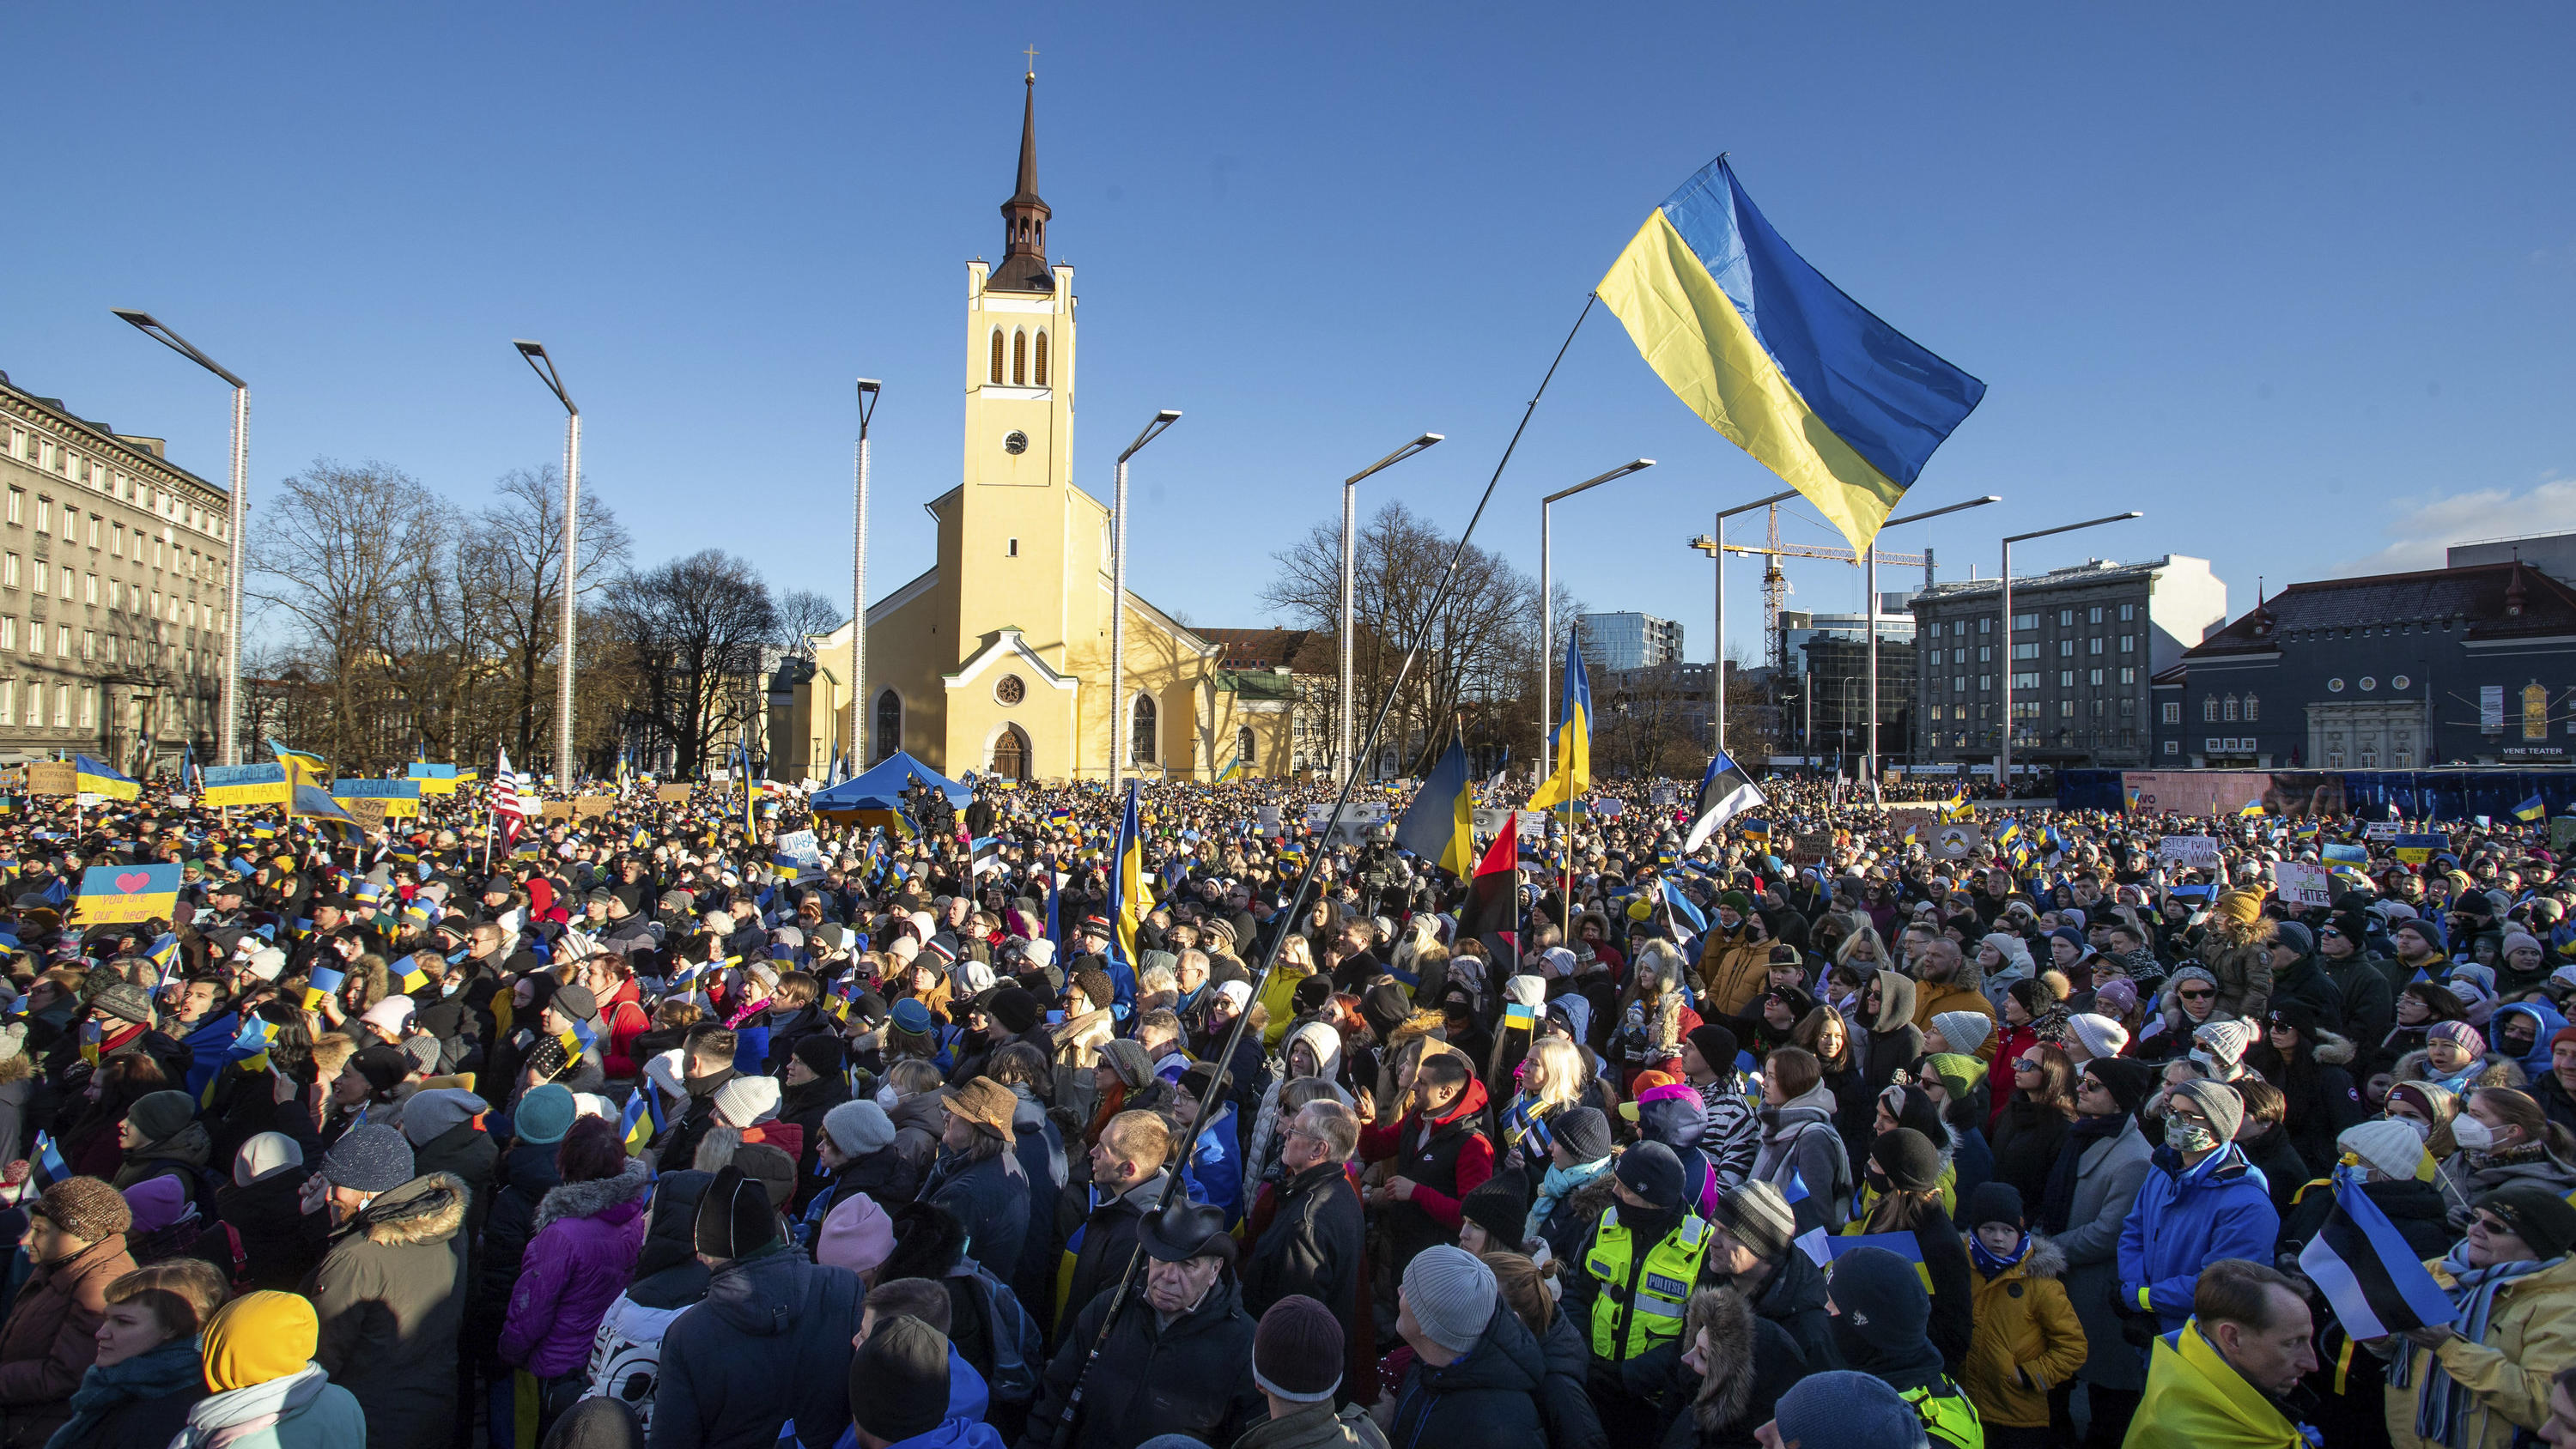 26.02.2022, Estland, Tallinn: Demonstranten versammeln sich mit ukrainischen Fahnen während einer Kundgebung zur Unterstützung der Ukraine gegen die Invasion Russlands. Foto: Raul Mee/AP/dpa +++ dpa-Bildfunk +++